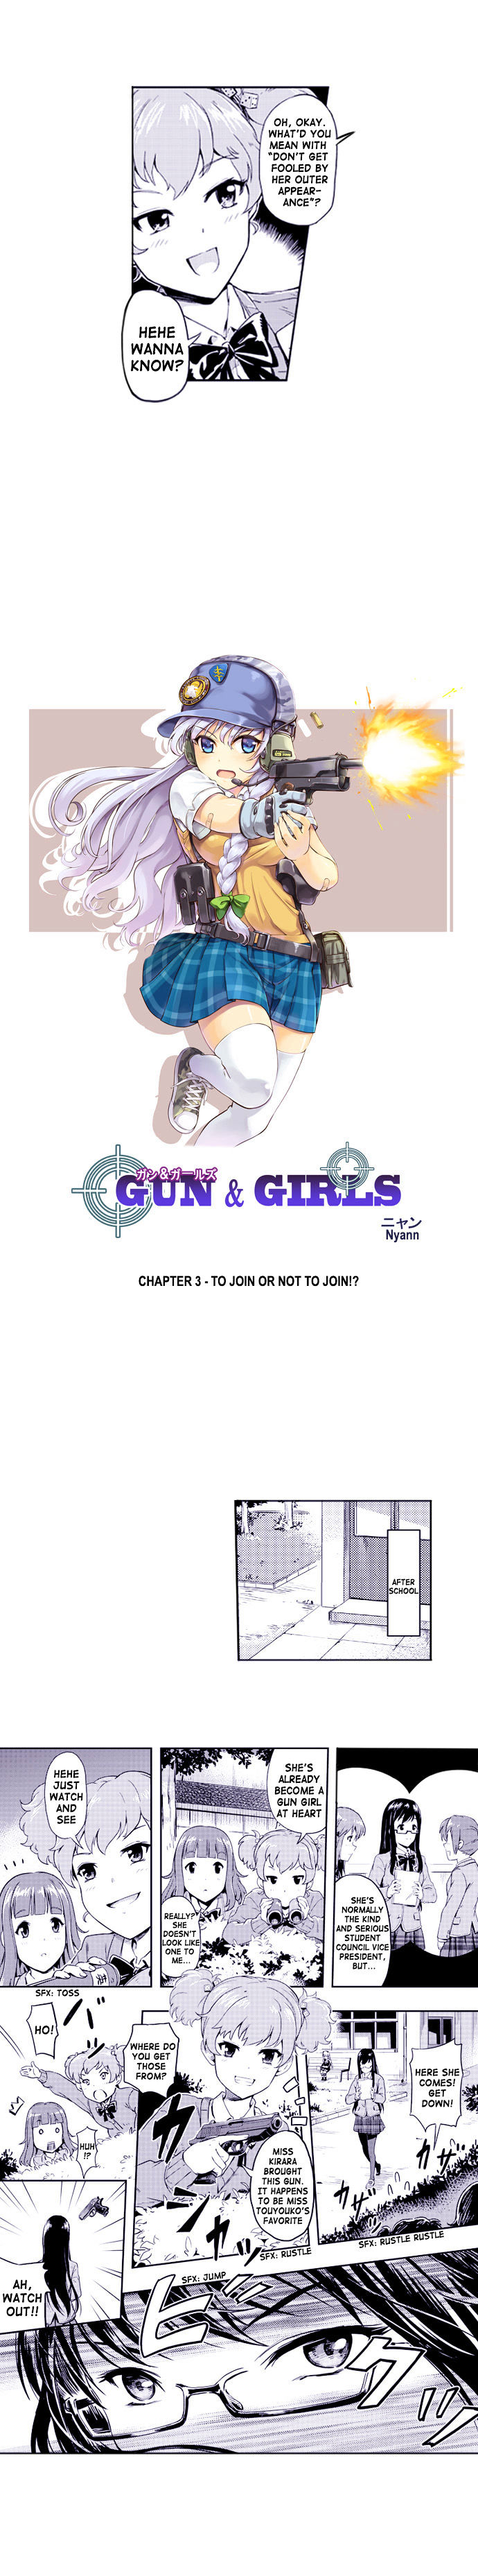 Gun & Girls Chapter 3 #1